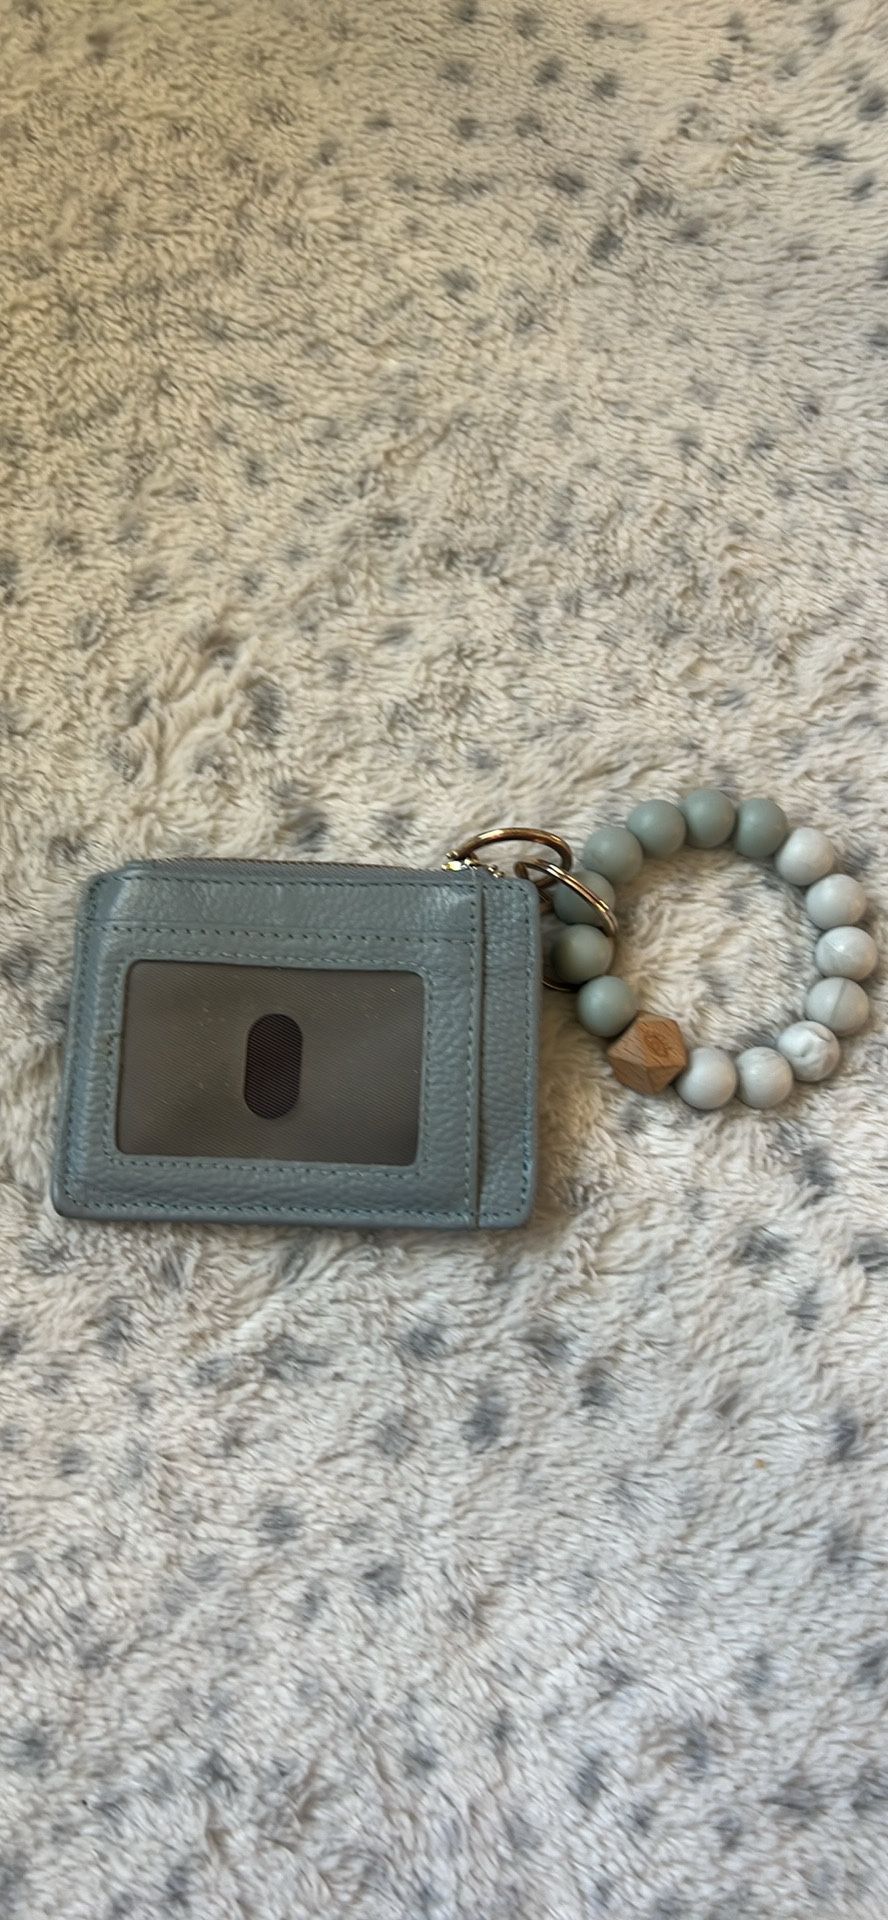 wallet plus bracelet keychain